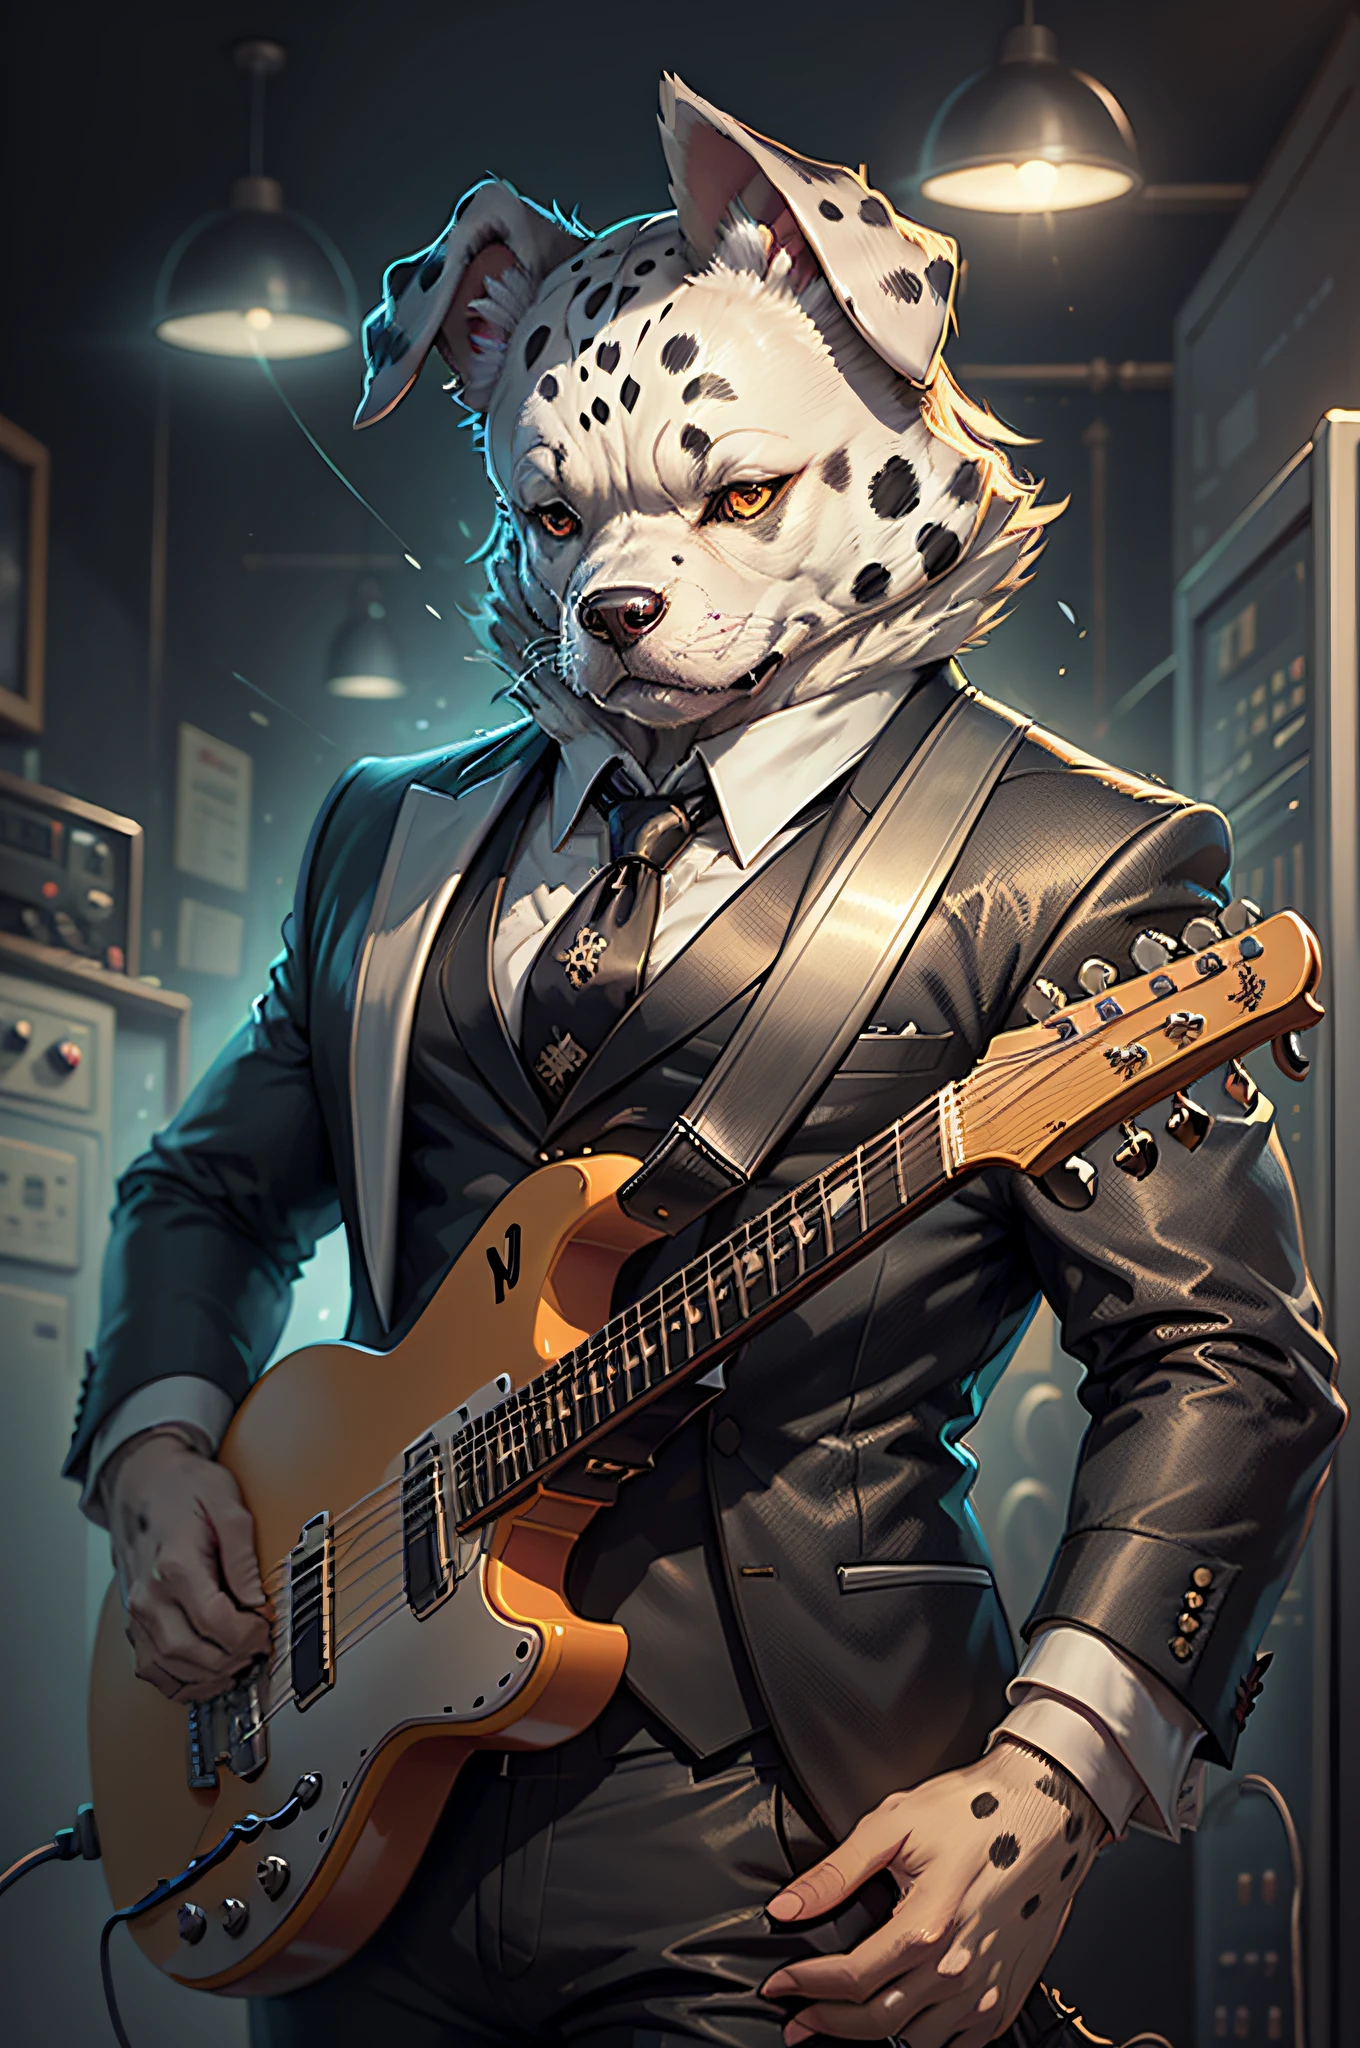 (Homme en costume noir et cravate)Dessin animé jouant de la guitare électrique、Chien dalmatien anthropomorphe à oreilles pendantes